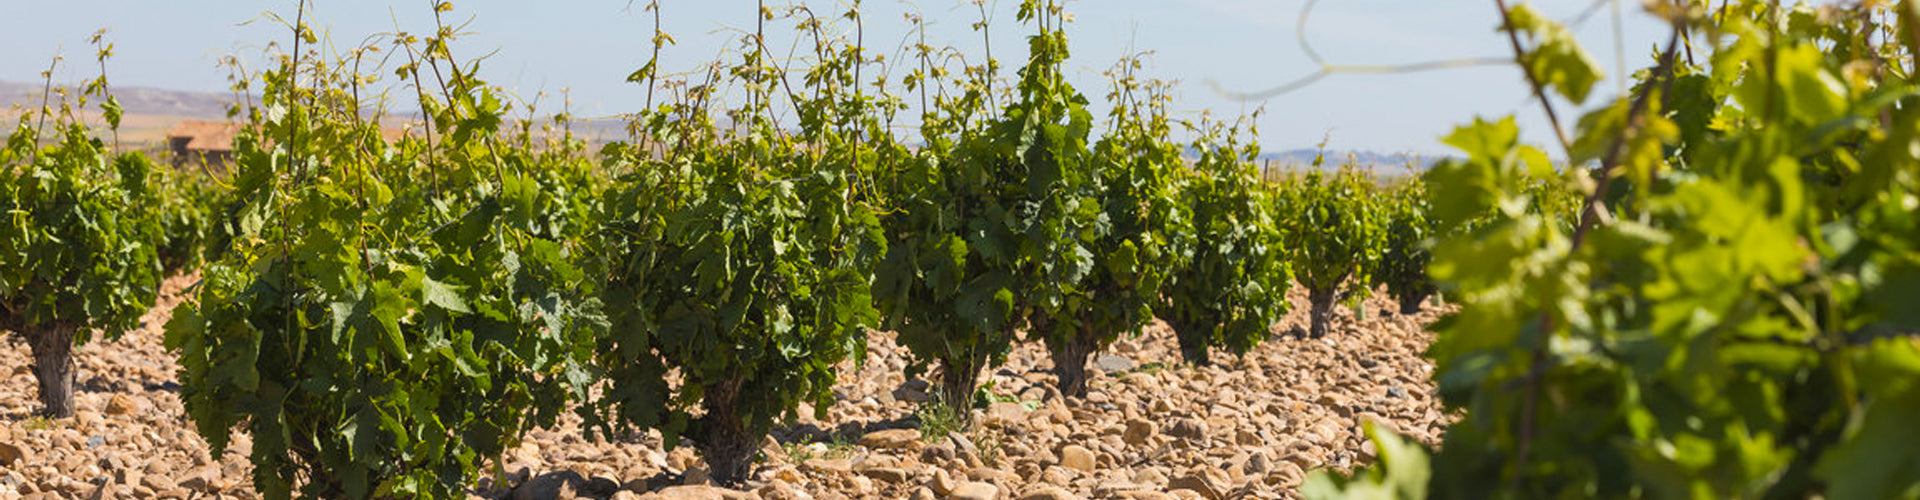 Vineyards of Pintia in Toro, Spain